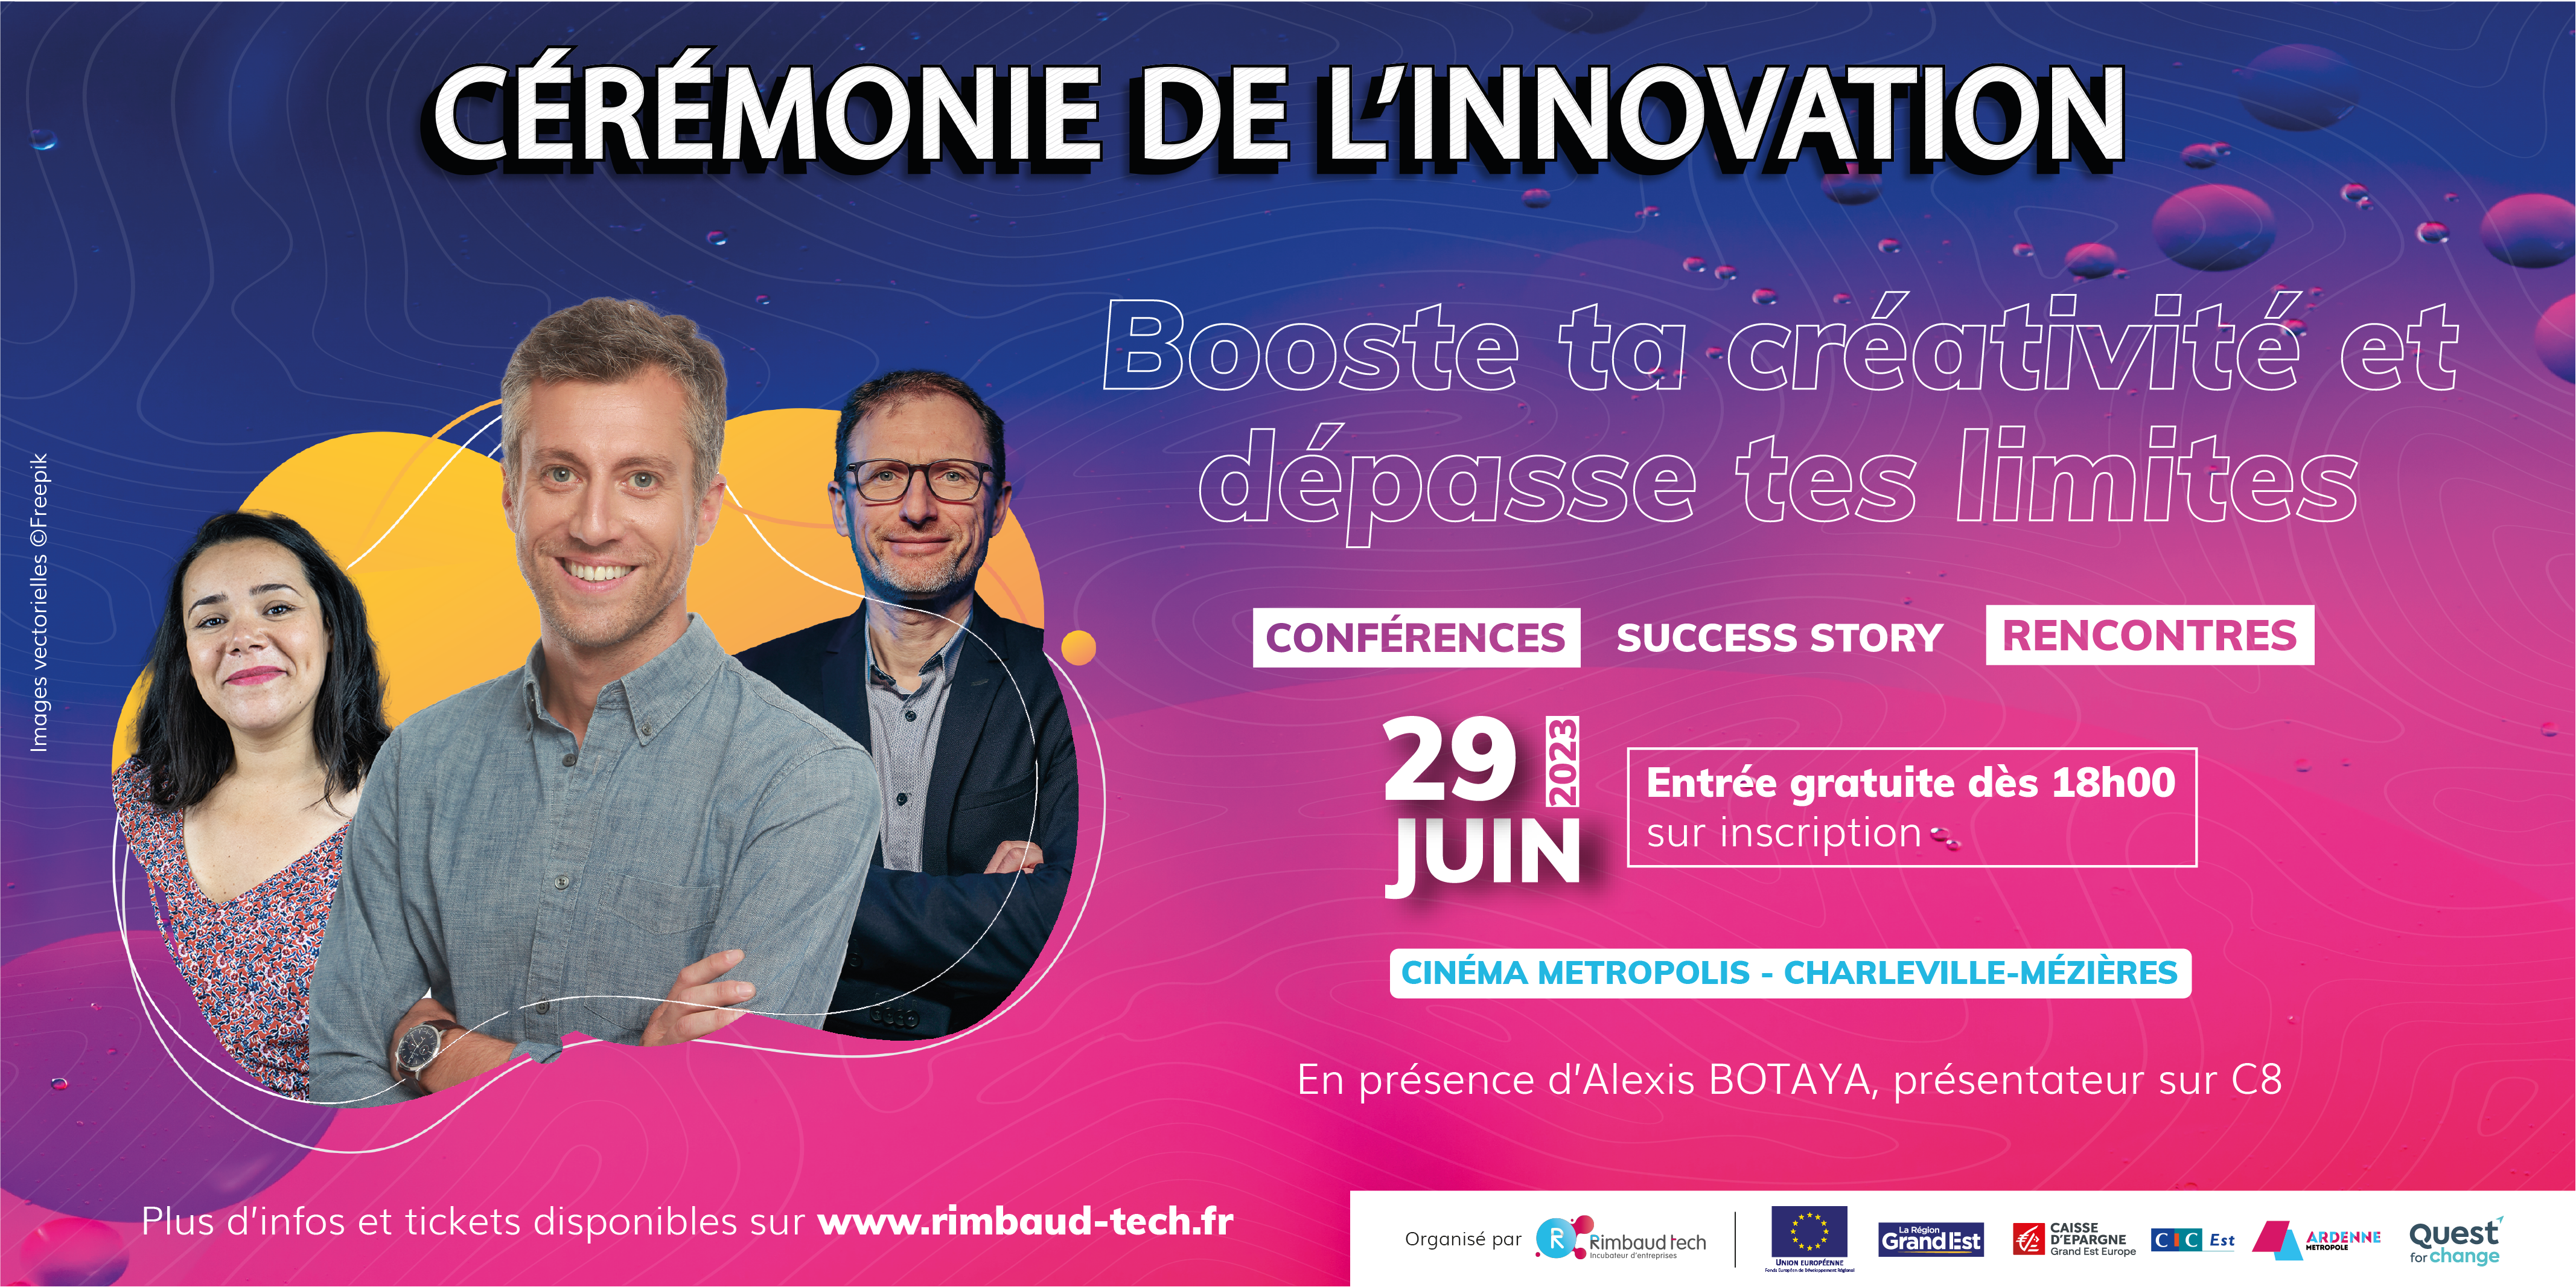 Dragonfly sera à la Soirée de l’Innovation à Charleville-Mézières, jeudi 29 juin.